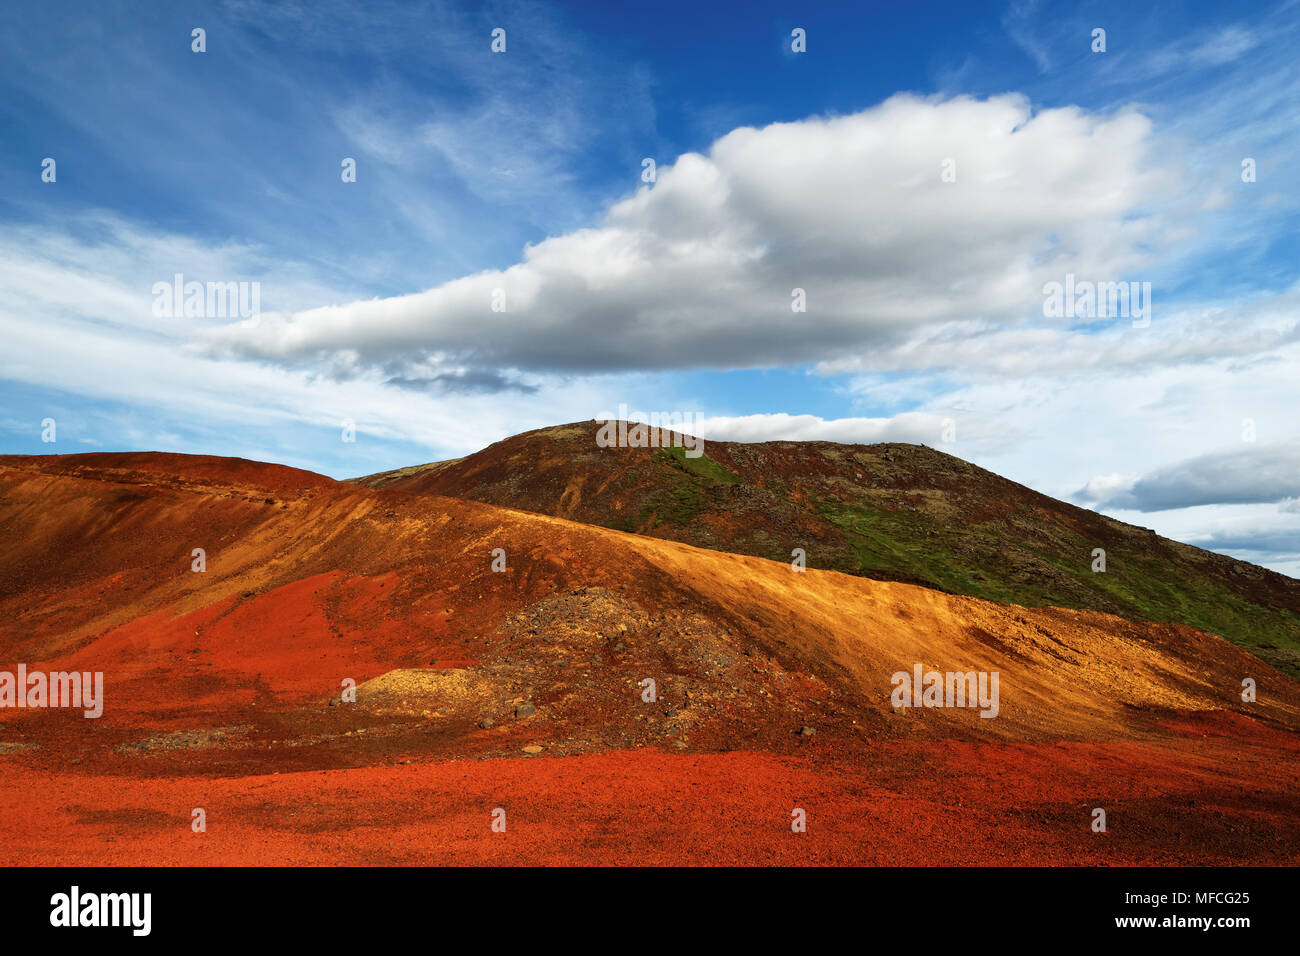 Bunte Ablagerungen vulkanischer Asche in Rot und Gelb auf grünem Hügel, über dem blauen Himmel mit einem markanten Wolkenbildung - Ort: Island, Golden Stockfoto